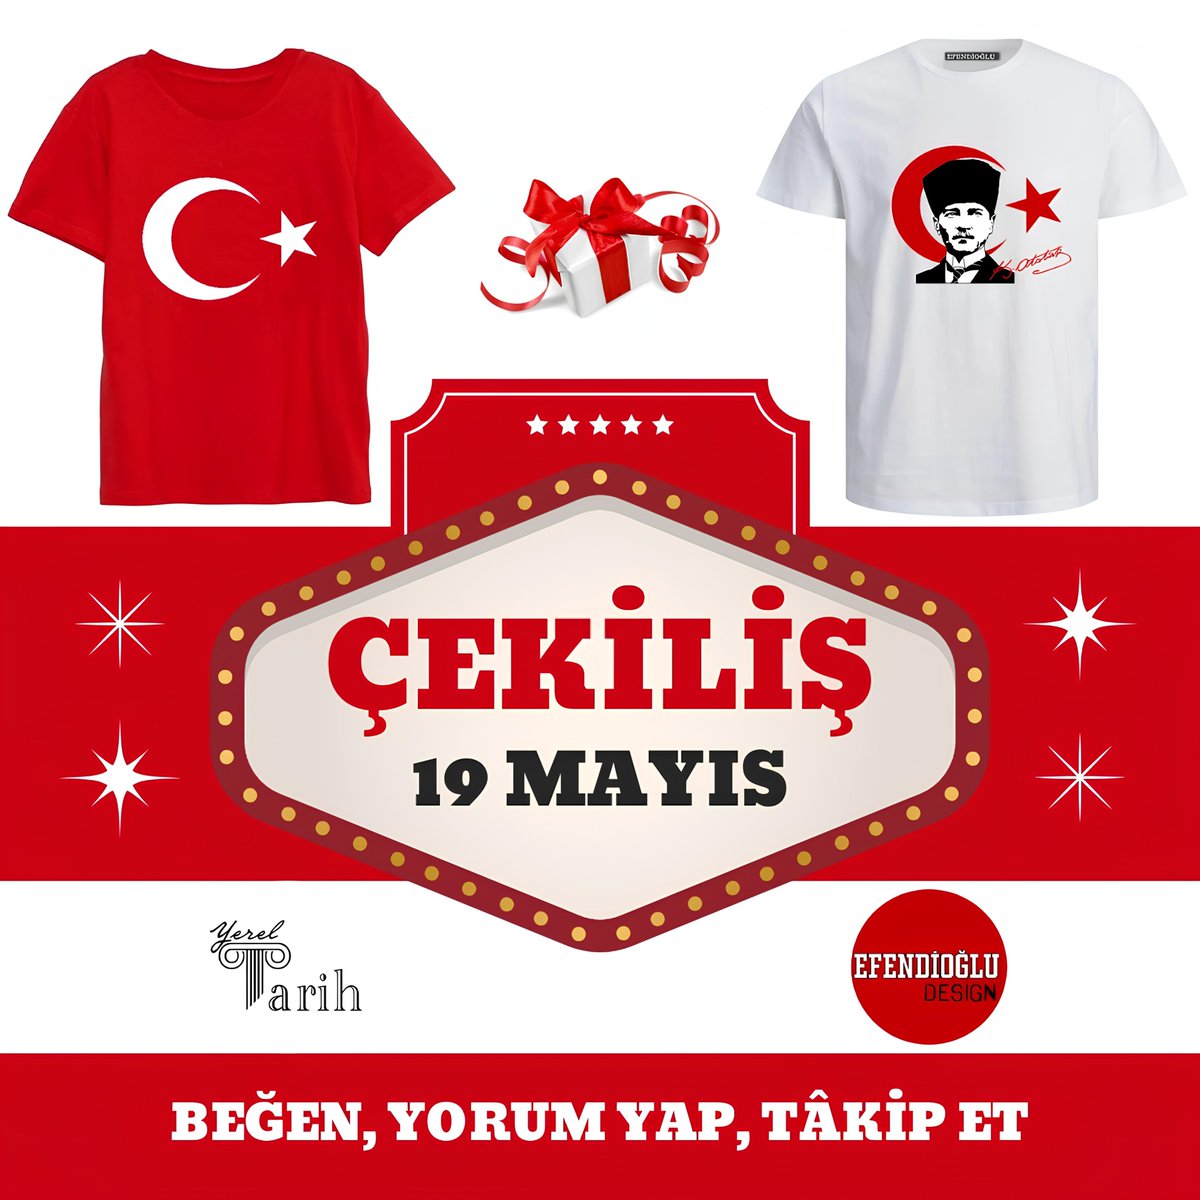 ÇEKİLİŞİMİZ VAR! 🎁

🇹🇷 '19 Mayıs Özel' Tişörtü Hediye Ediyoruz!

📌 Instagram'da 'yereltarihh' sayfasını tâkip ederek, kısa sürede açıklanacak olan çekilişimize katılabilirsiniz.

#tarih #cekilis #hediye #ATATÜRK #MustafaKemalAtatürk #Türkiye